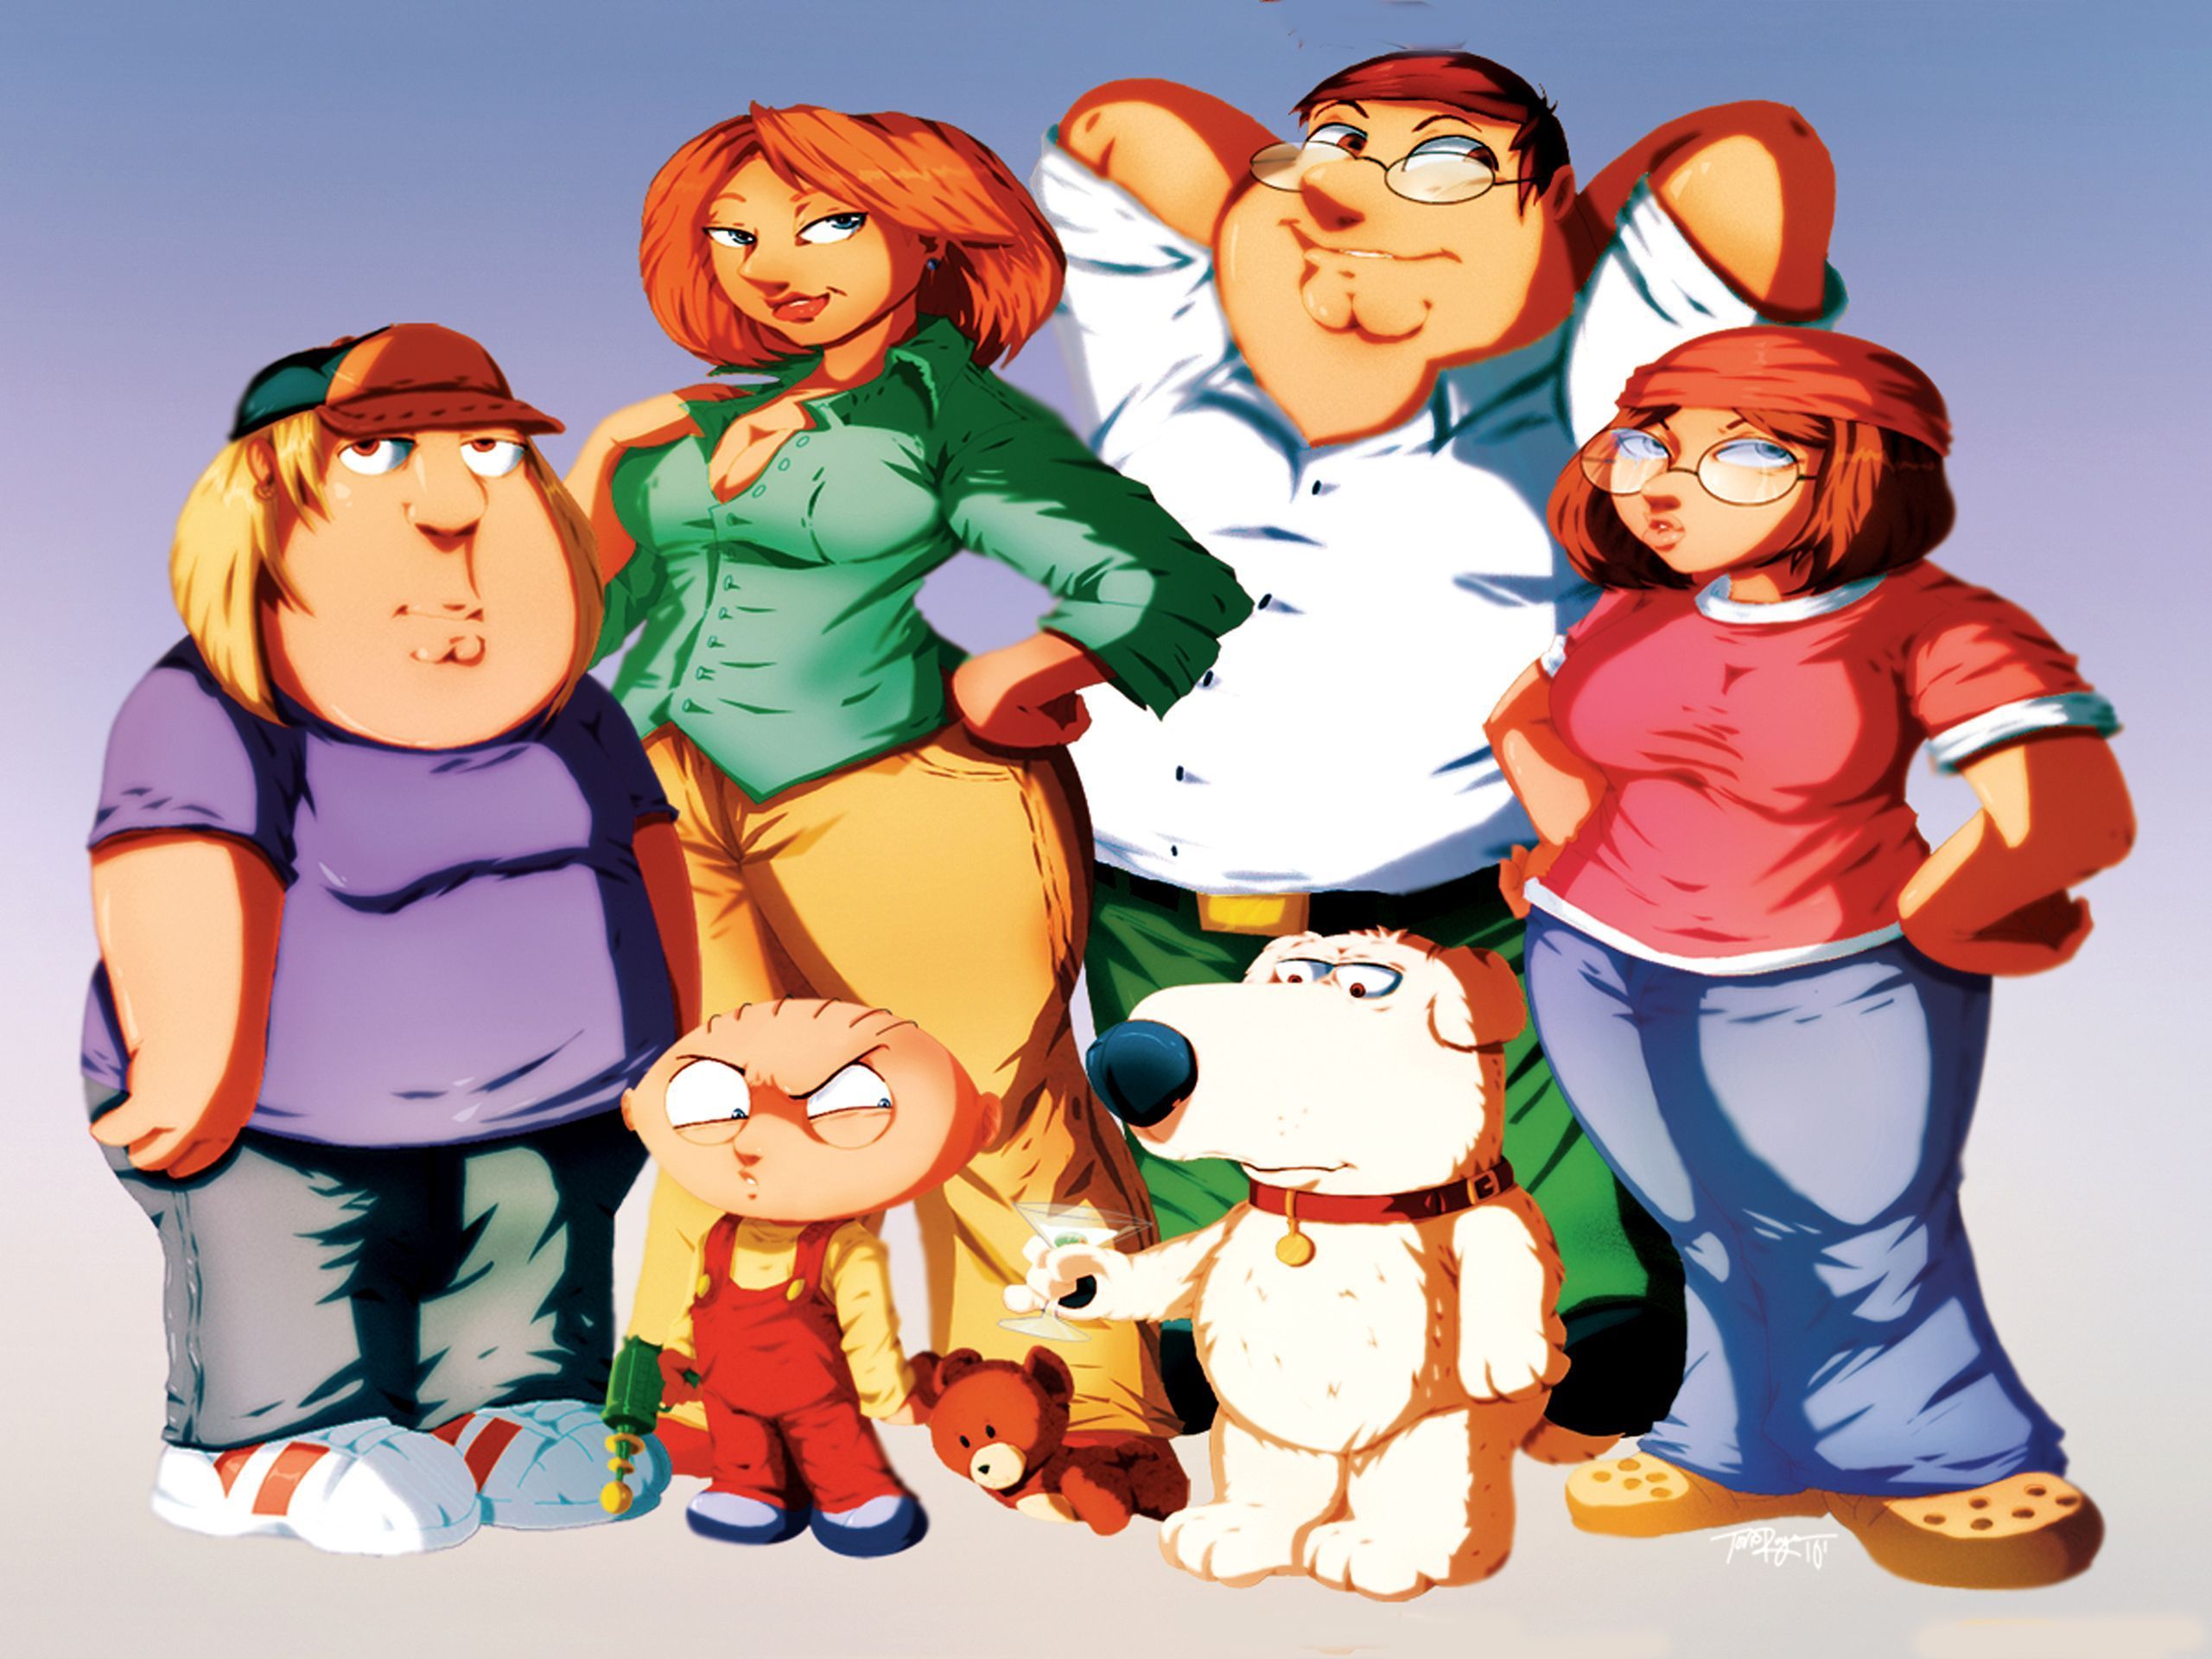 Family Guy PC Wallpaper